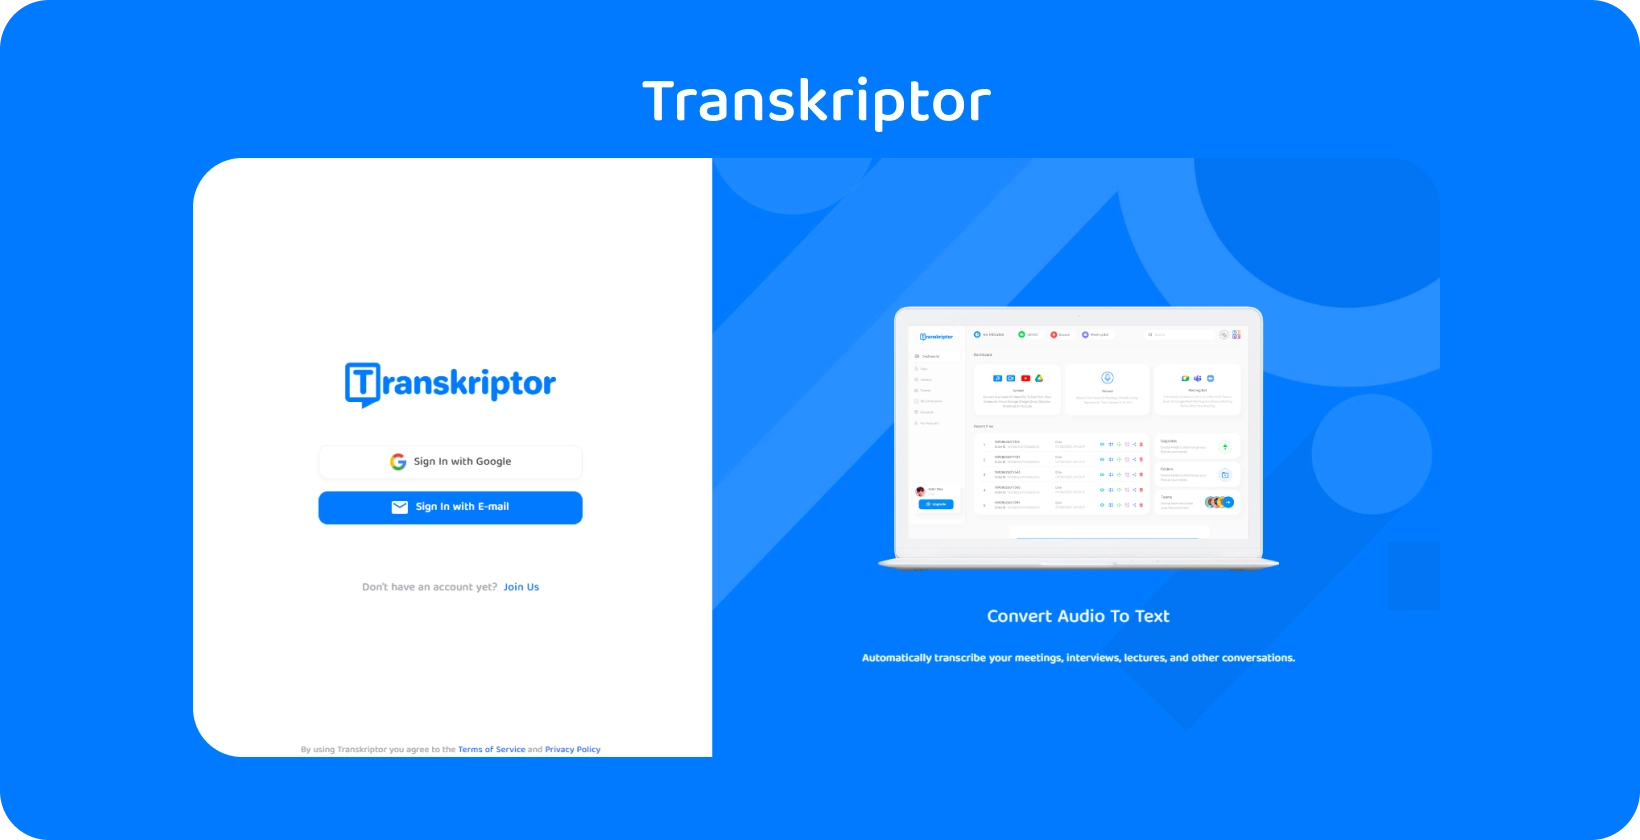 Interfaz de la aplicación Transkriptor que muestra servicios fáciles de transcripción de audio a texto para obtener información sobre registros médicos.